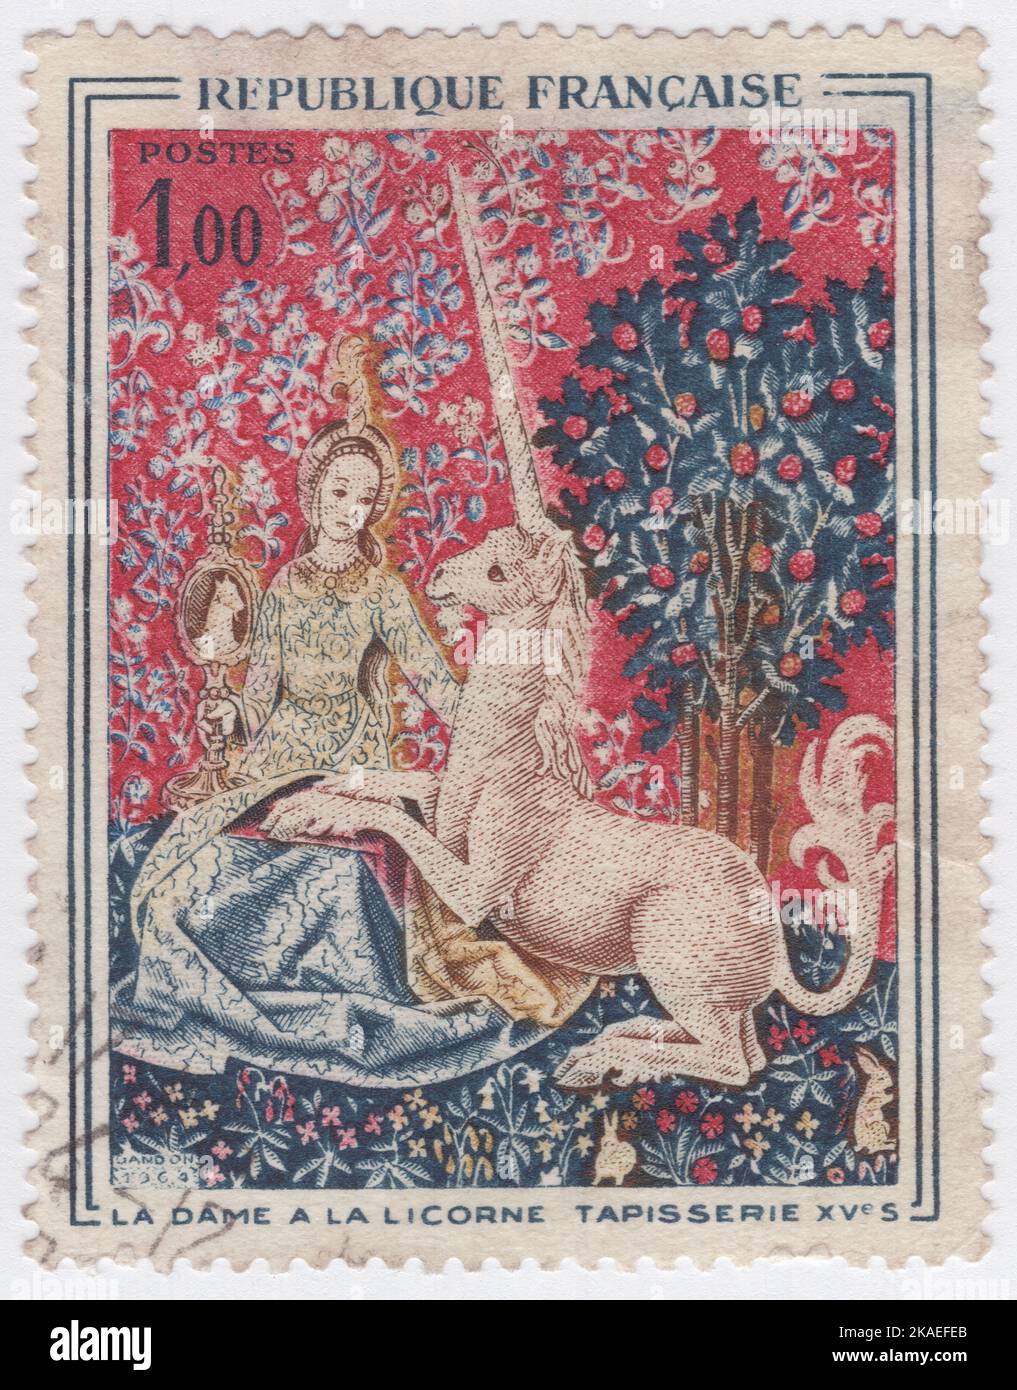 FRANCIA - 1964 ottobre 31: Francobollo multicolore da 1 franchi raffigurante un frammento, tratto dall'arazzo la Dame a la licorne (la Signora e l'Unicorno), circa 1500. Museo di Cluny, Parigi. Arte della Chiesa Foto Stock